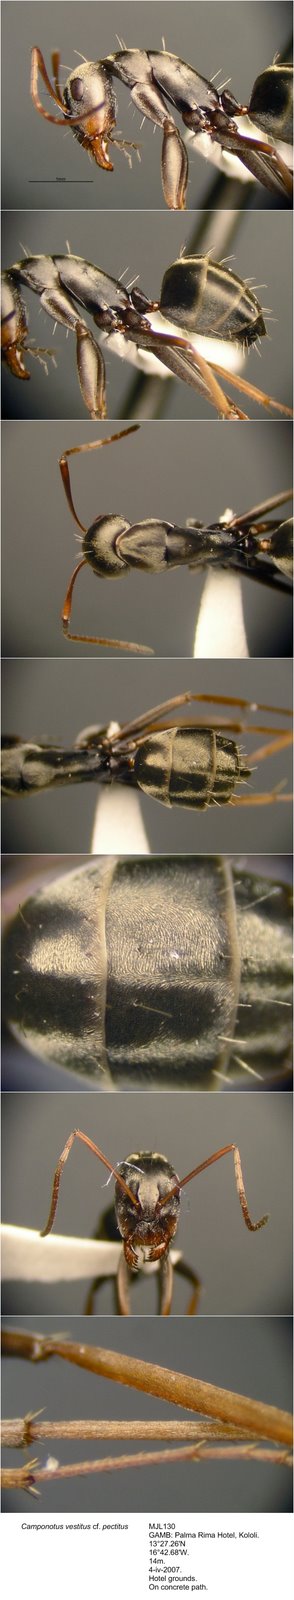 [Camponotus+vestitus+pectitus+MJL130+photomontage+linear.jpg]